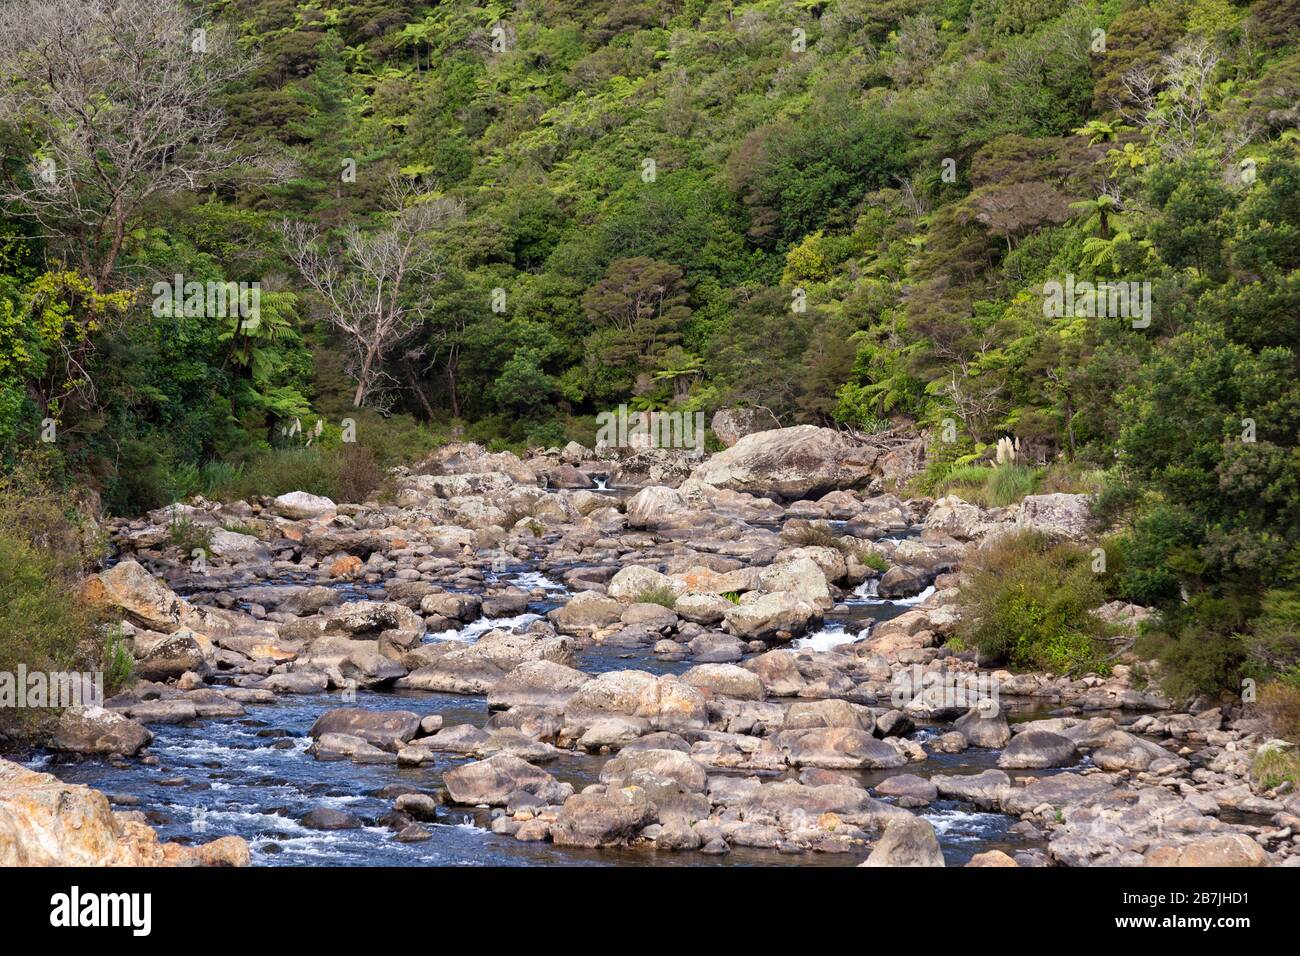 The Karangahake Gorge and Ohinemuri River Stock Photo